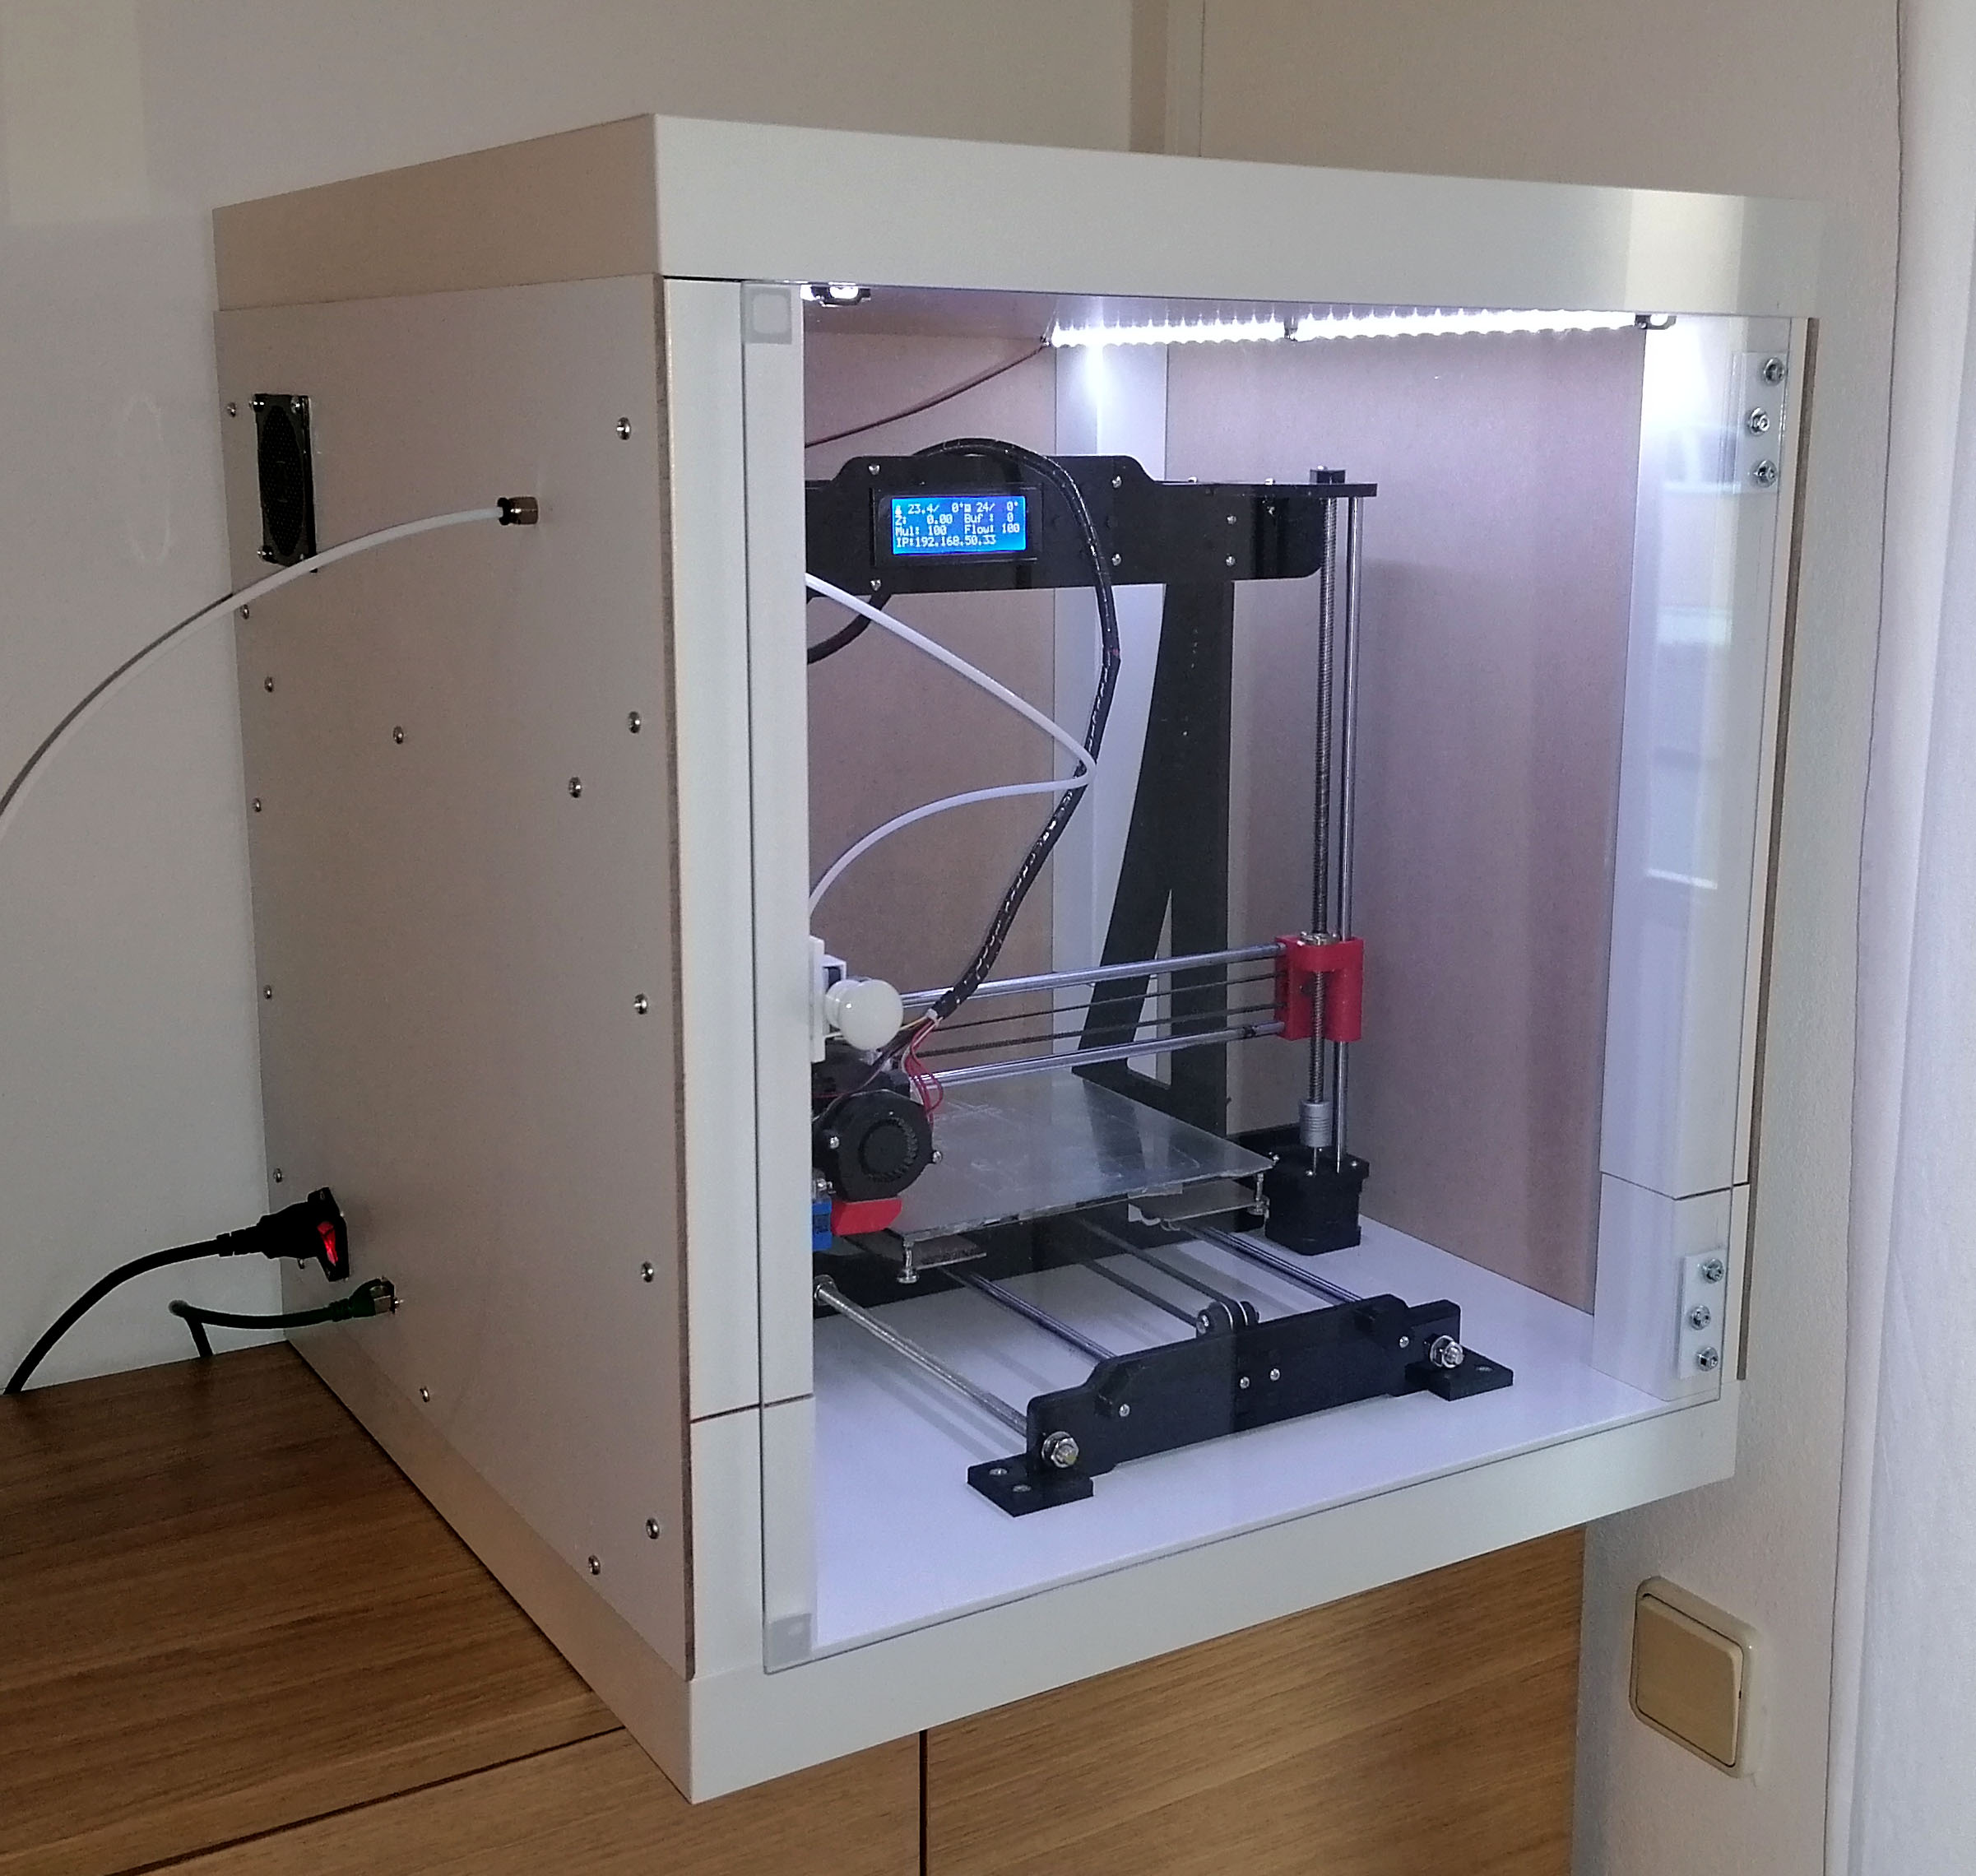 Ikke moderigtigt Træts webspindel ekskrementer 3D printer enclosure made of IKEA LACK tables – MatP's view of the world